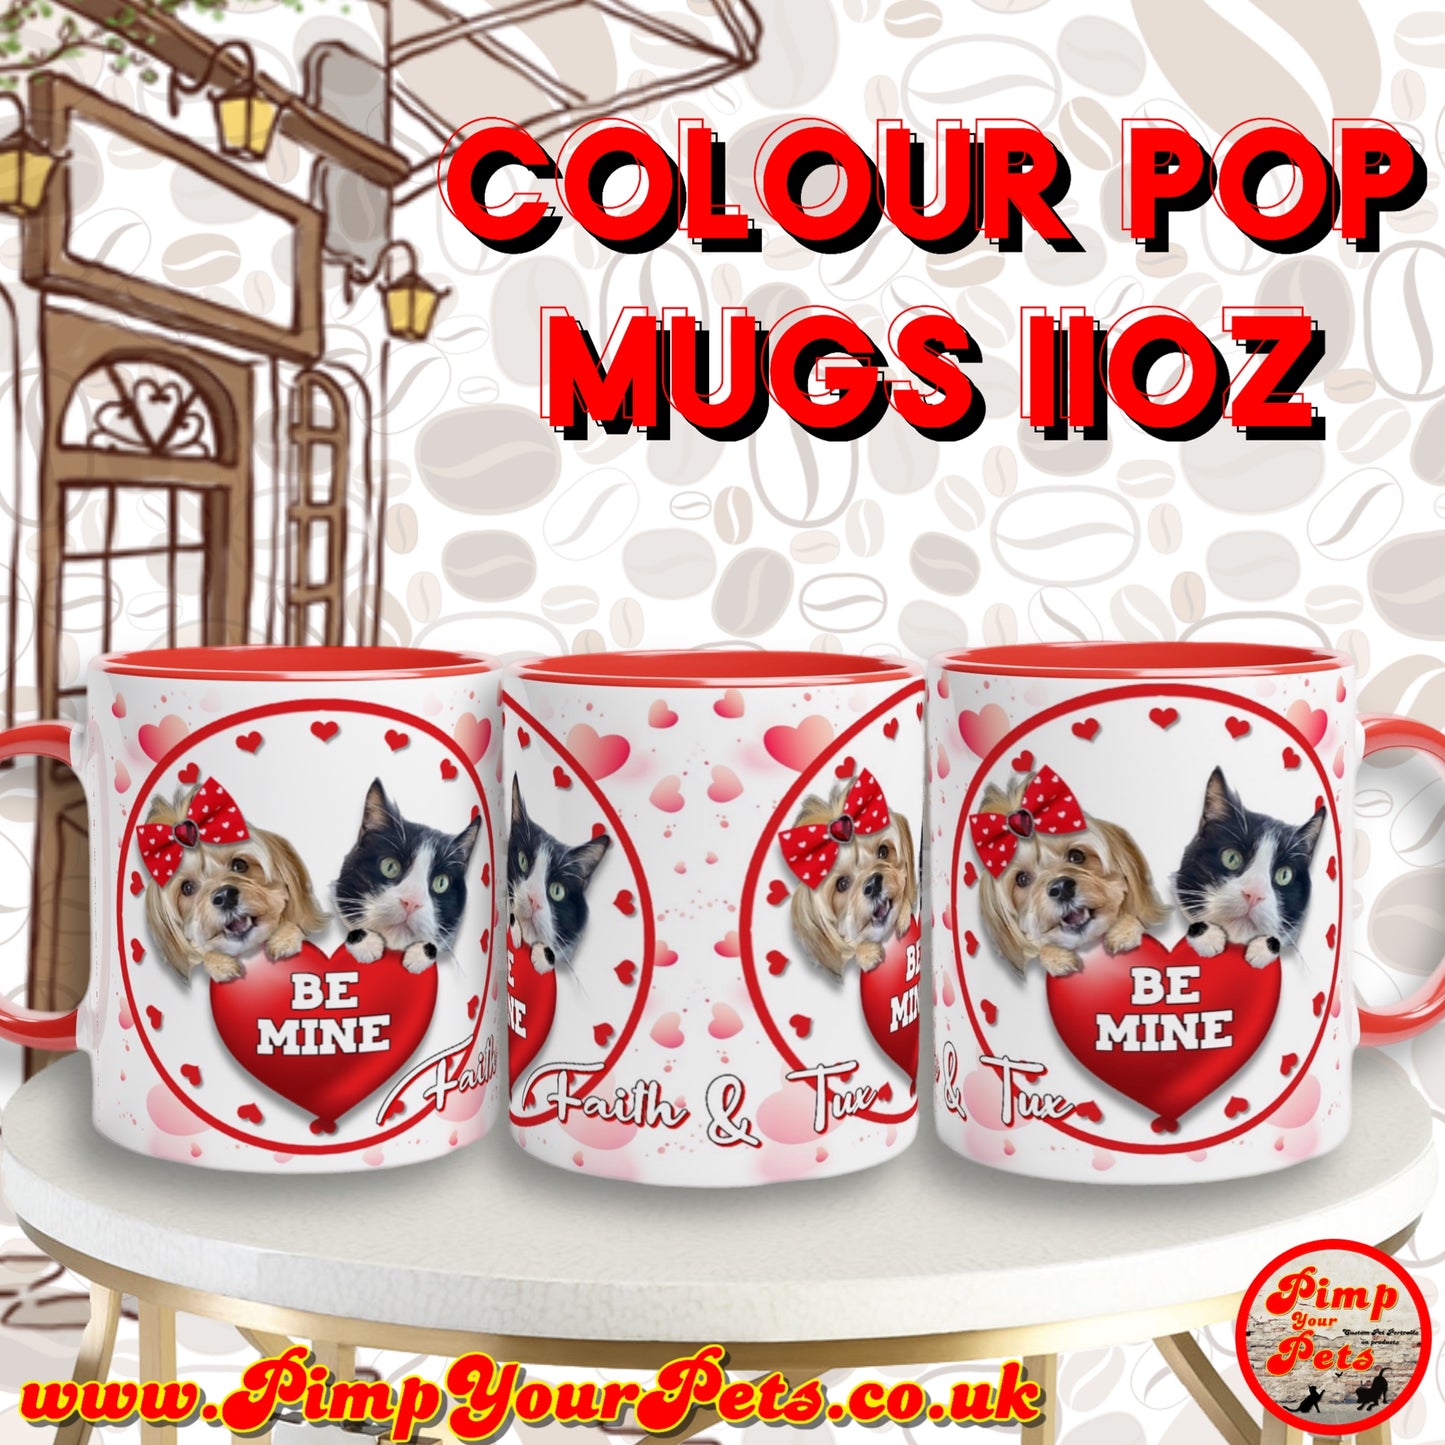 Colour Pop Mugs ( Contemporary Design)